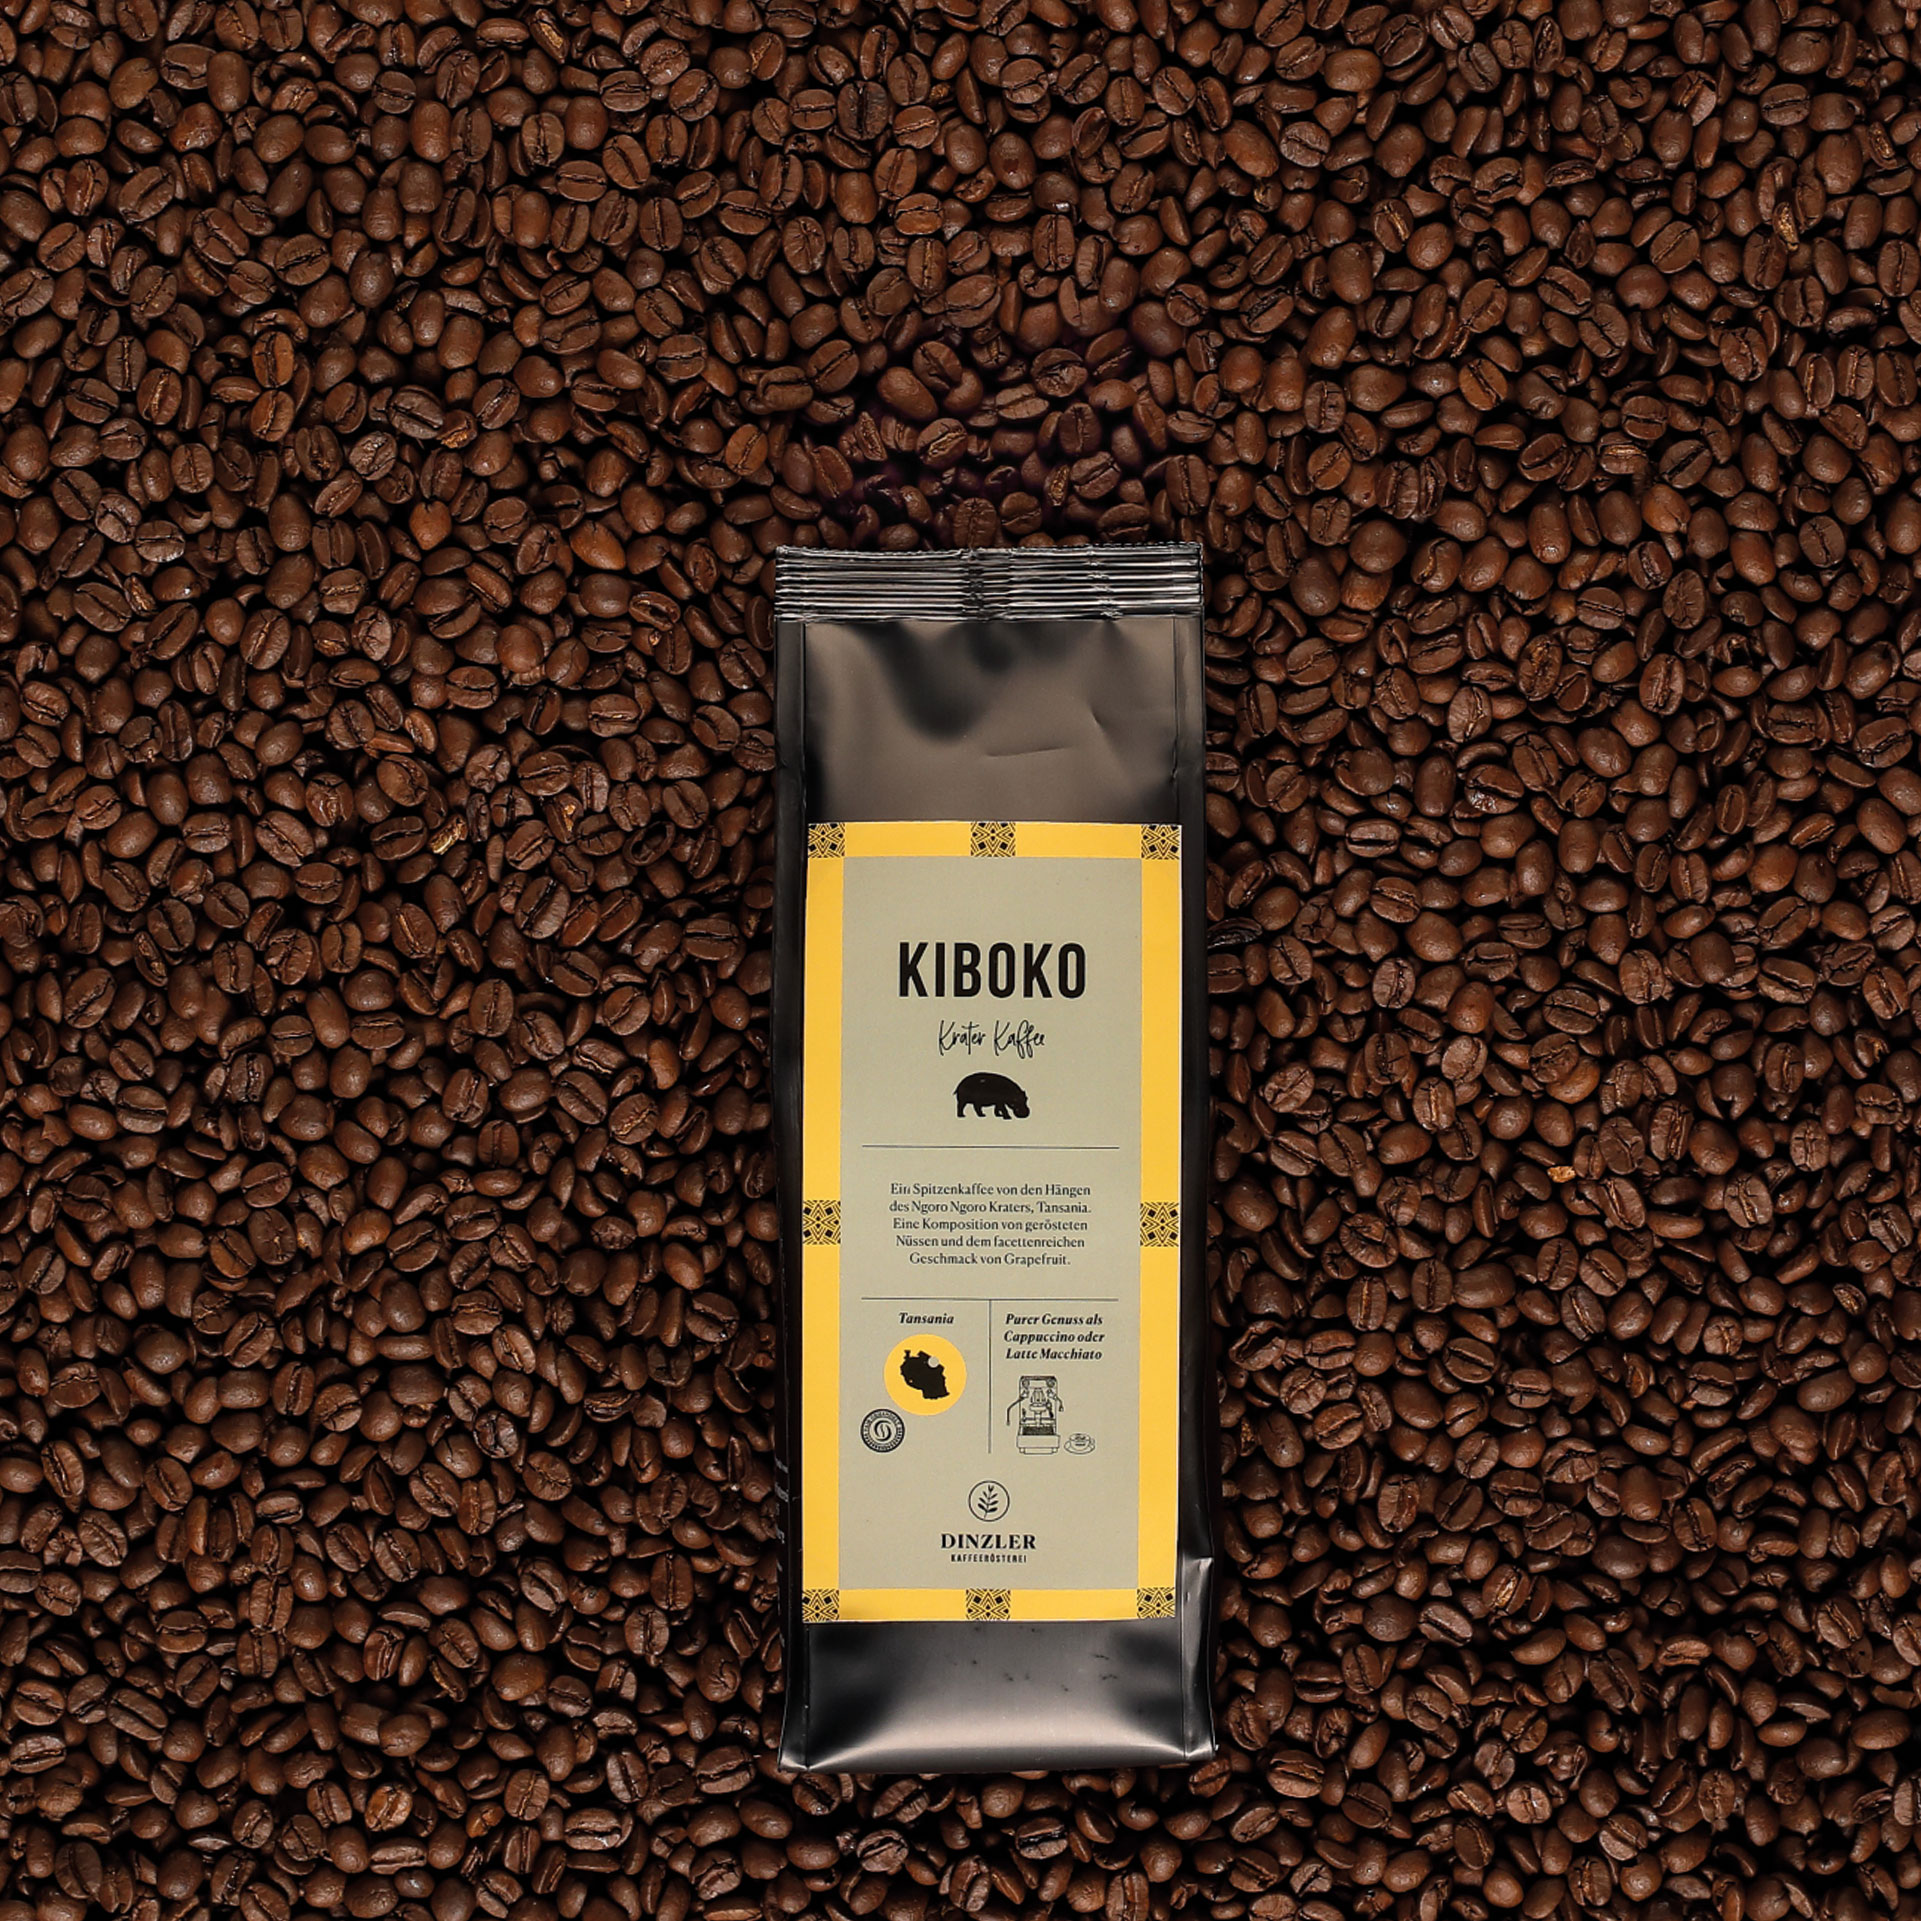 Produktbild DINZLER Espresso Kiboko| DINZLER Kaffeerösterei